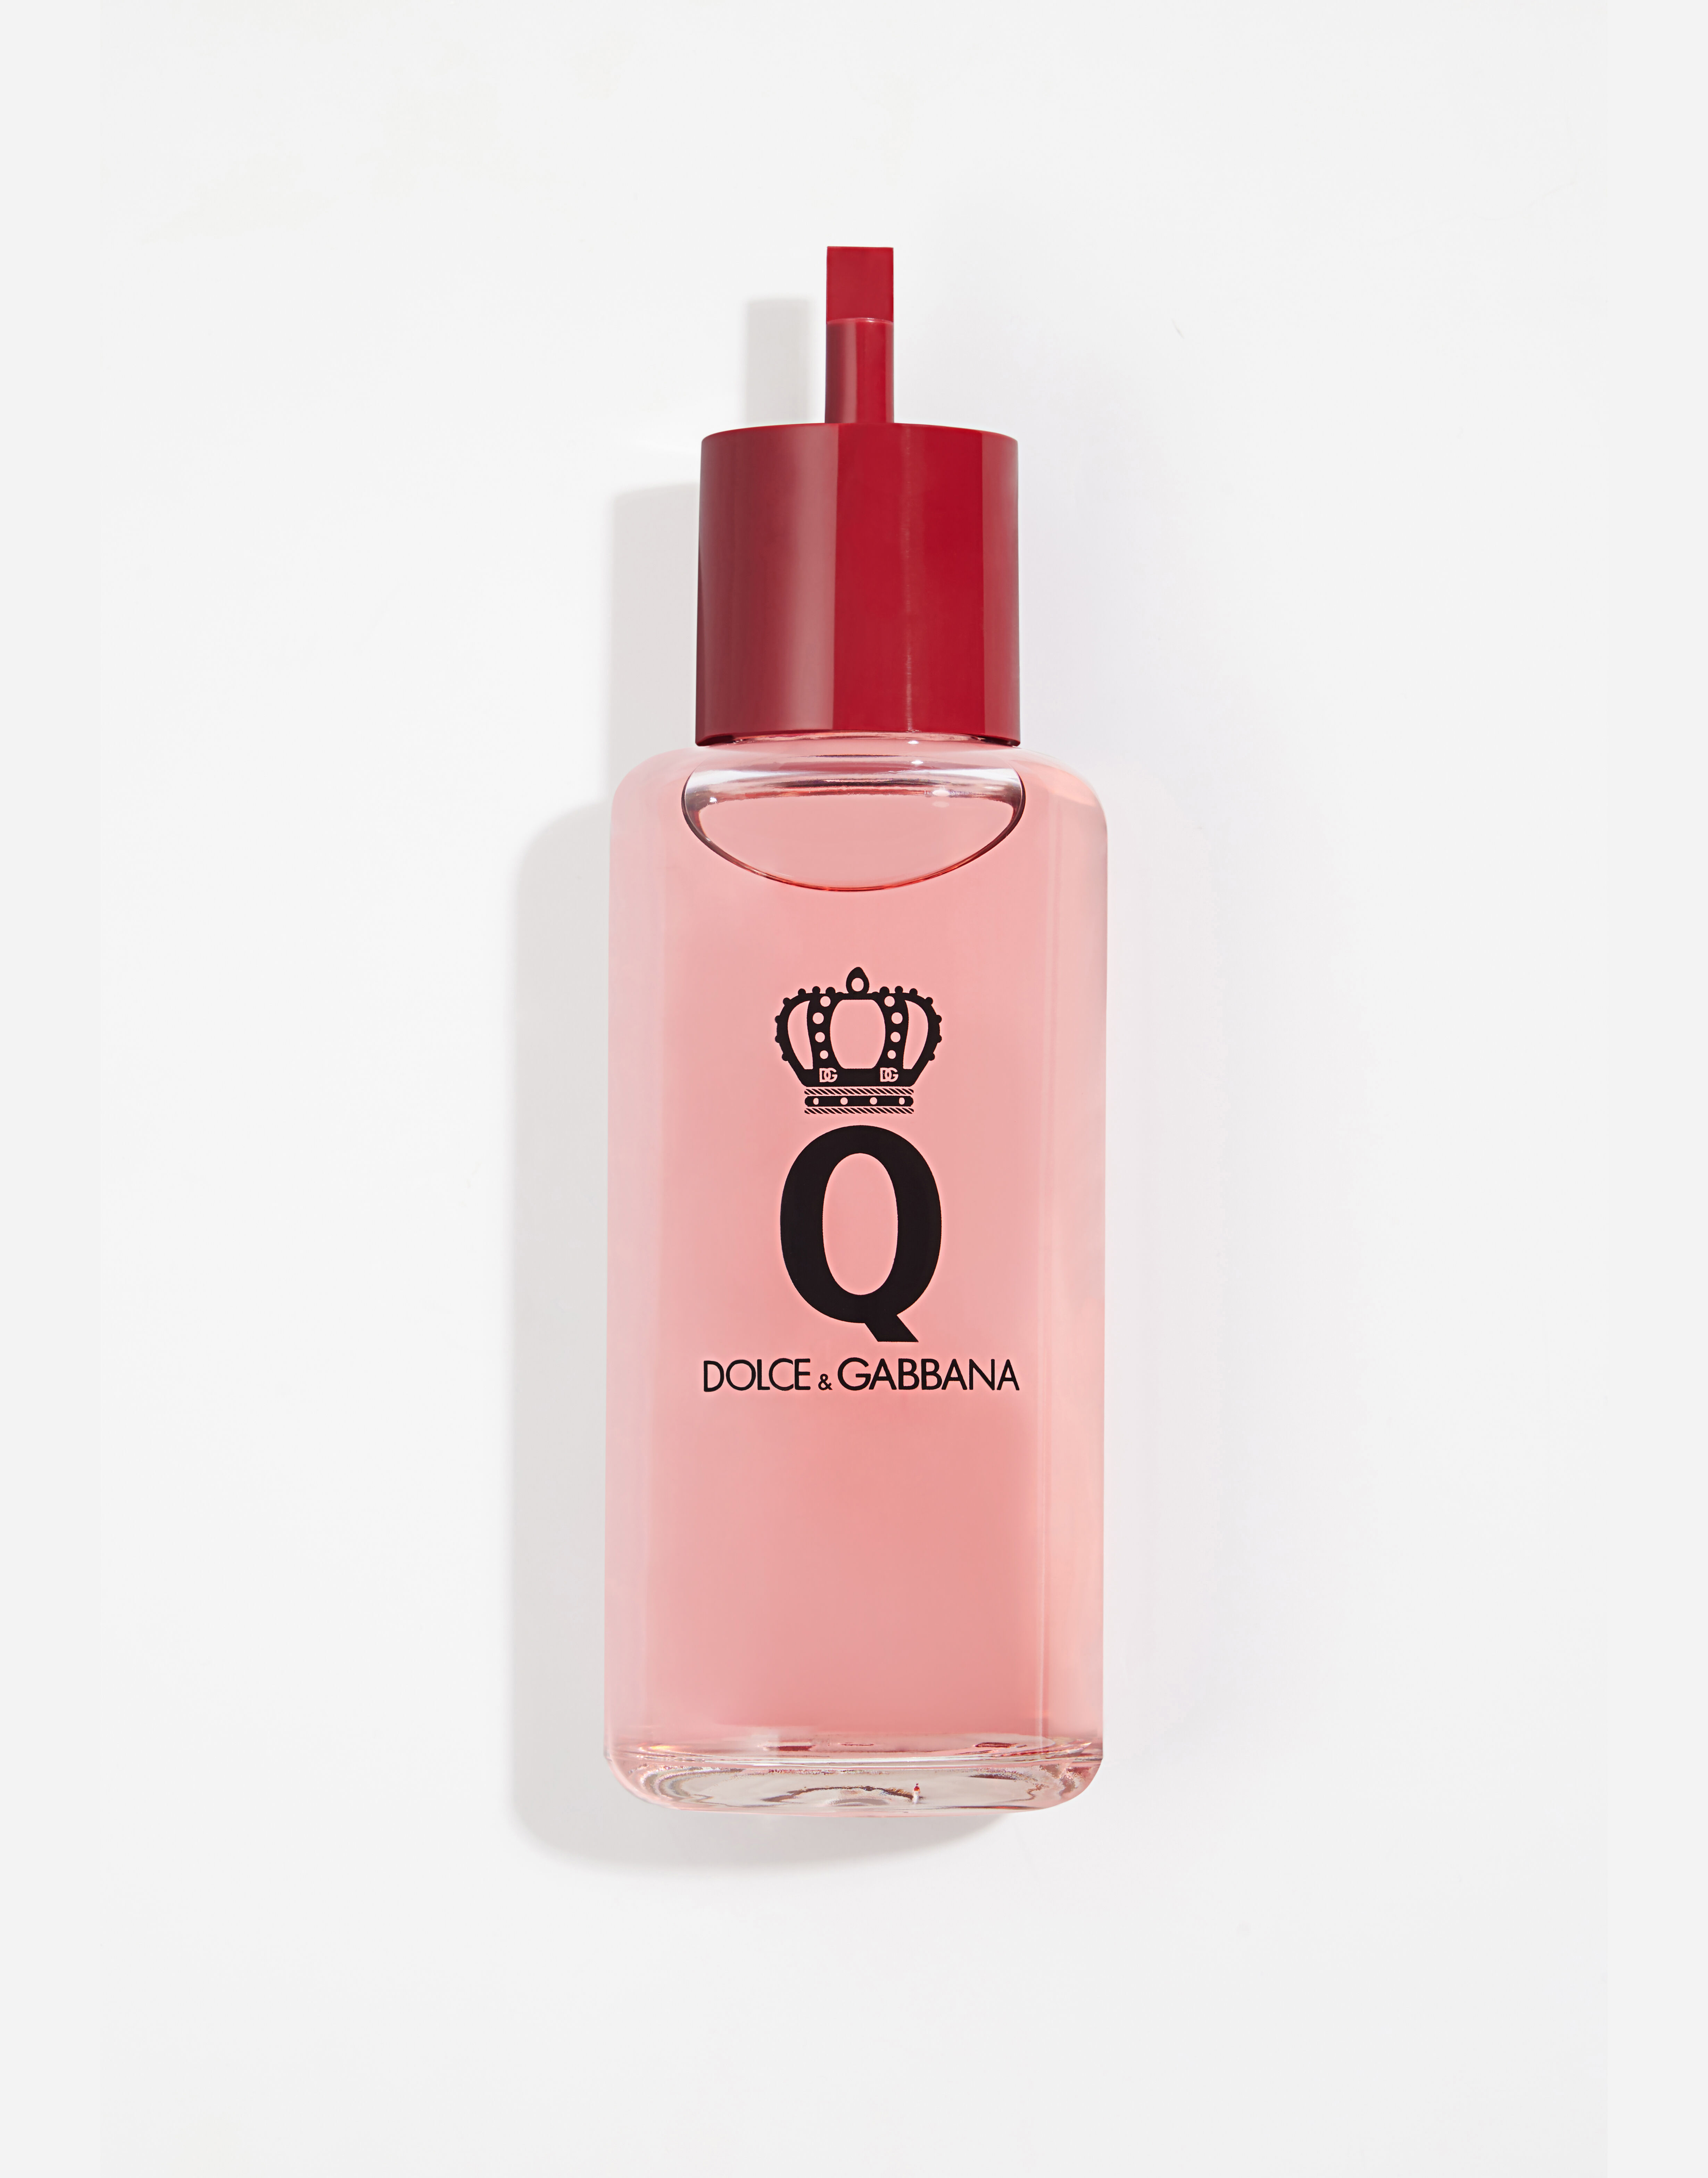 ${brand} Q by Dolce&Gabbana Eau de Parfum Refill ${colorDescription} ${masterID}